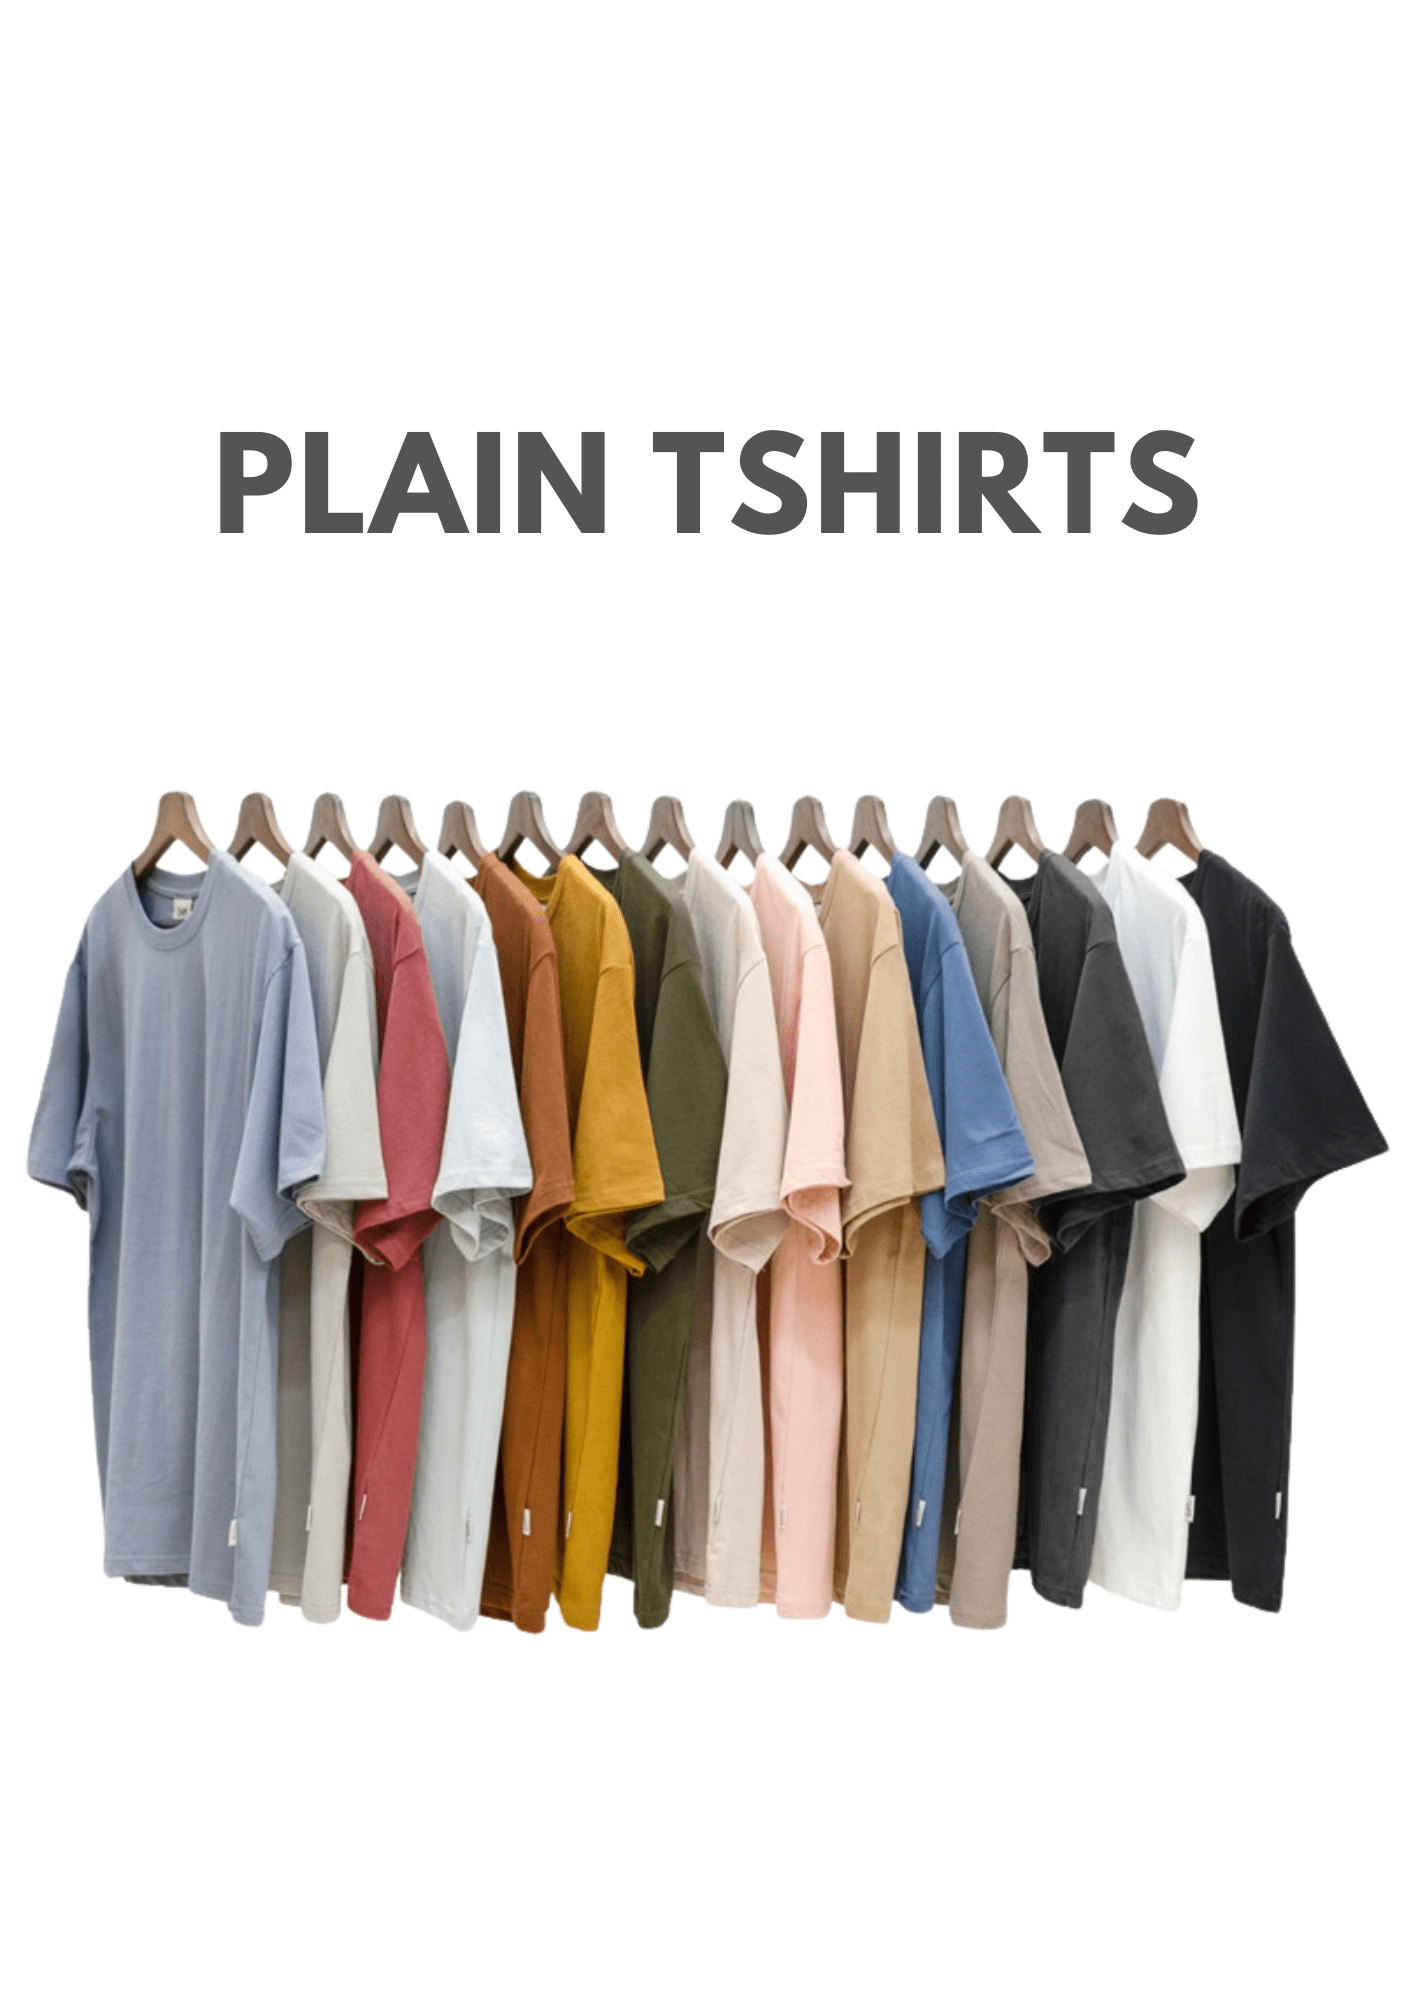 Plain tshirt manufacturers in tirupur